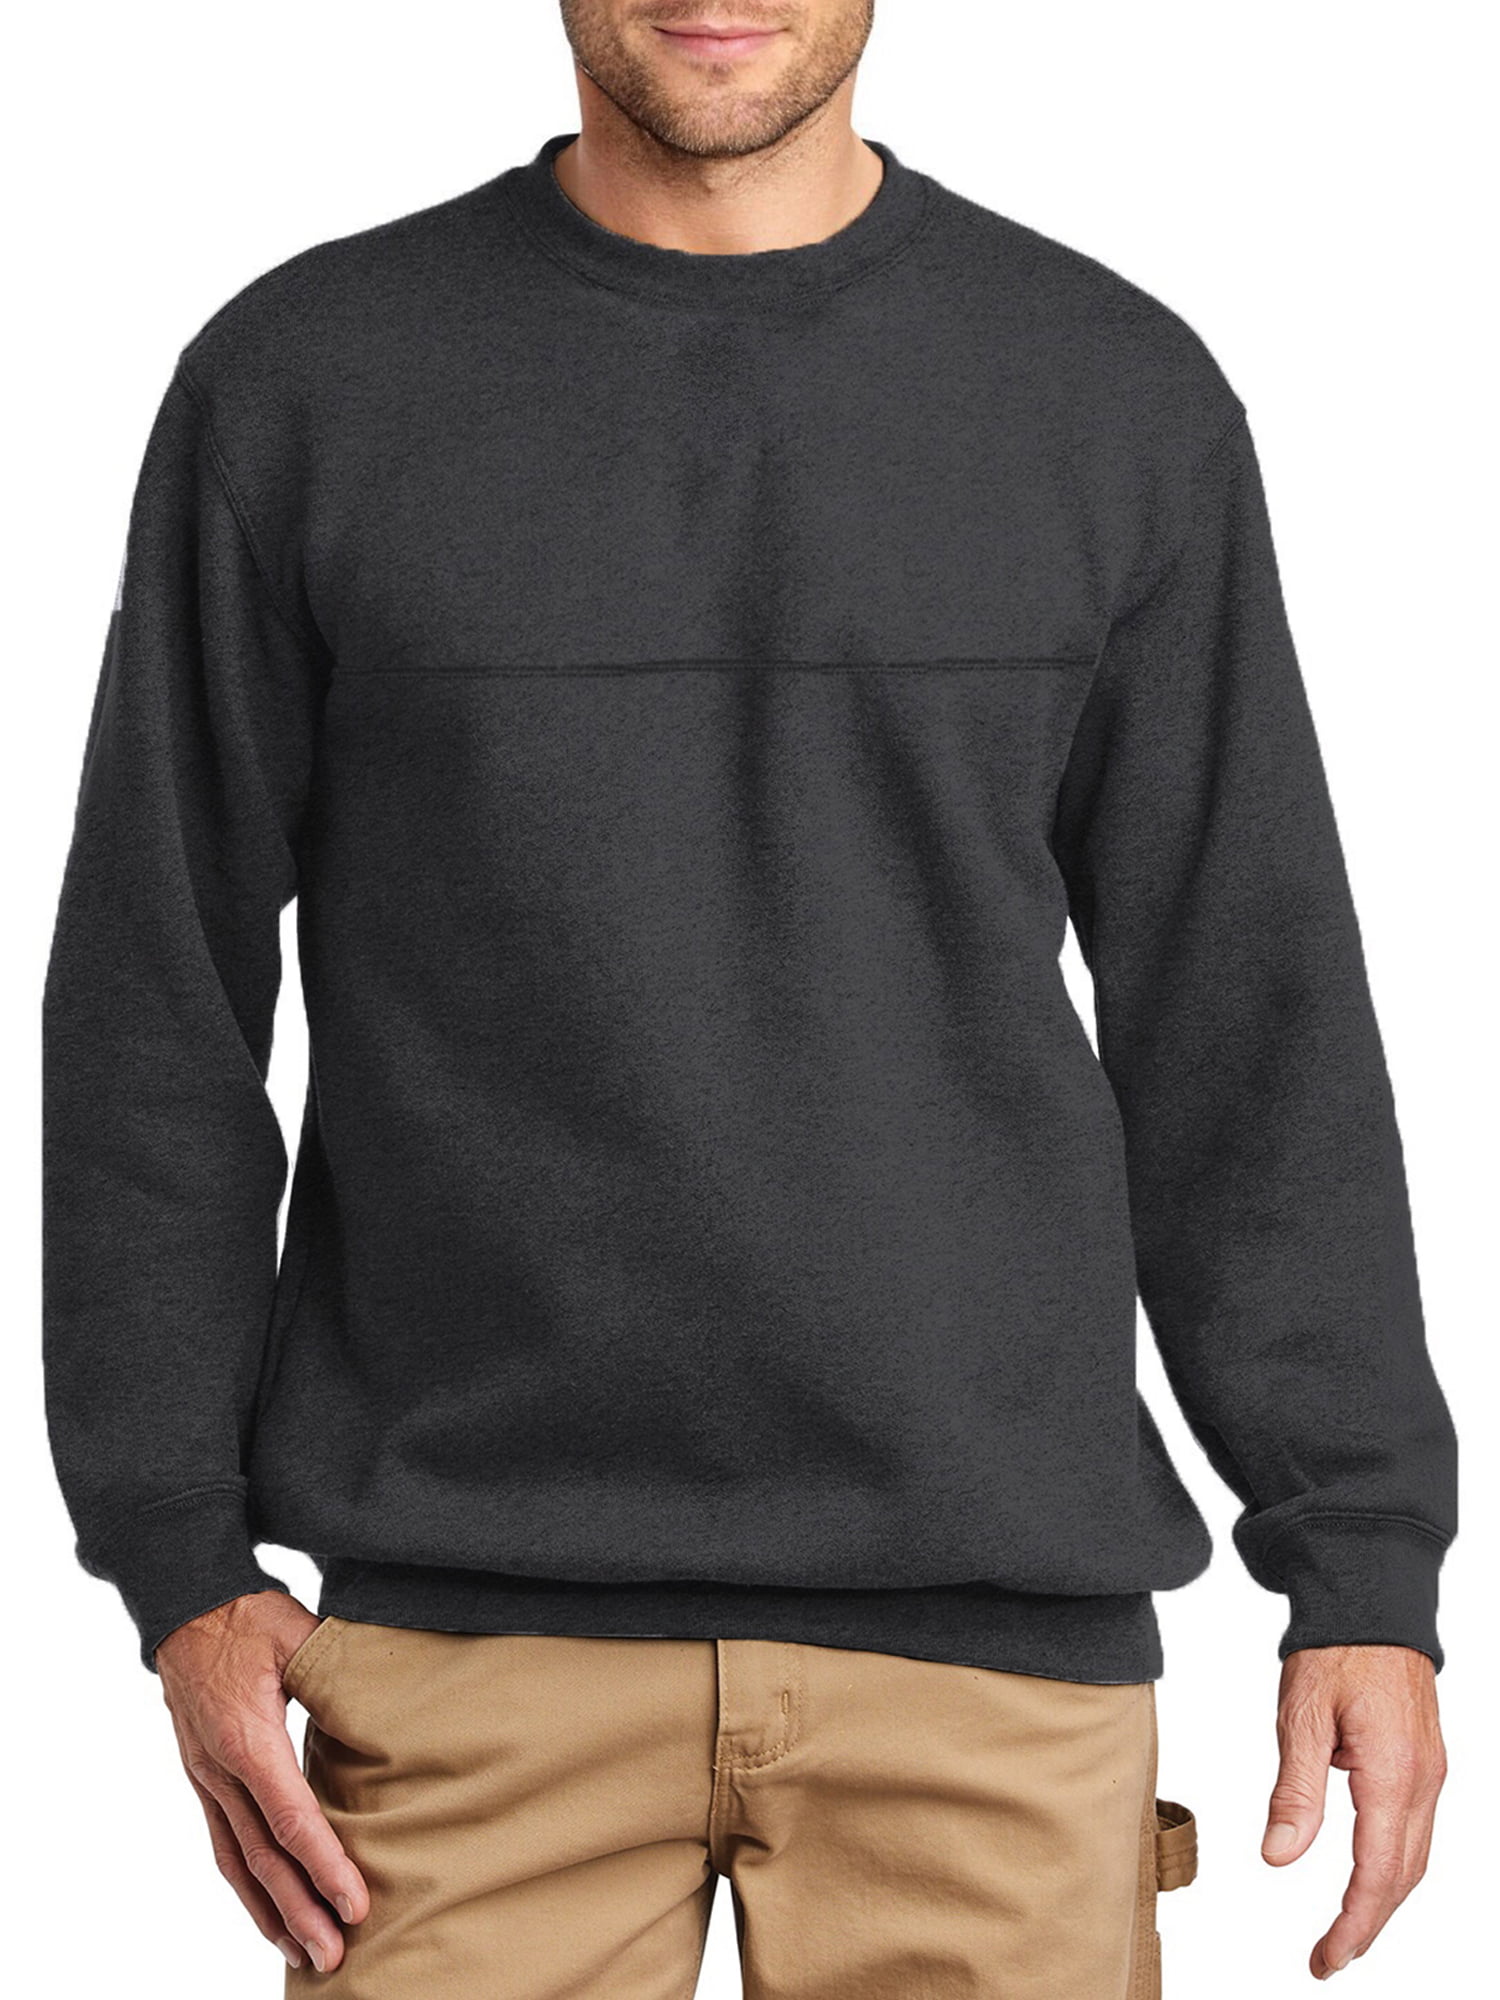 North Hudson Outfitters Men's Sueded Fleece Sweatshirt - Walmart.com